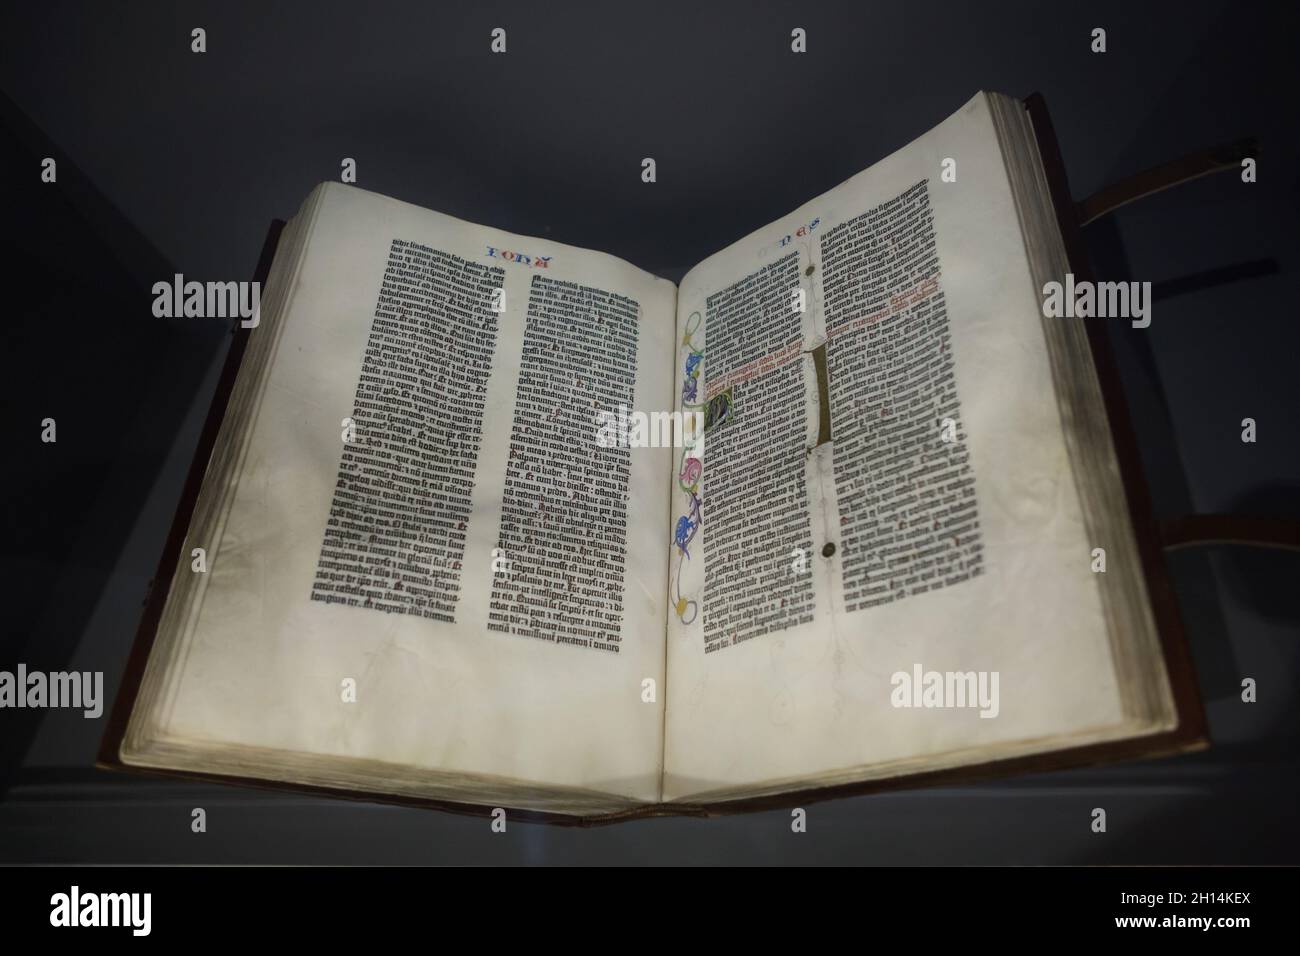 Die Gutenberg-Bibel, auch bekannt als die 42-zeilige Bibel, die der deutsche mittelalterliche Drucker und Verleger Johannes Gutenberg 1454-1455 auf Pergament gedruckt hatte, befindet sich heute im Besitz der Staatsbibliothek zu Berlin und ist in der Ausstellung „Spätgotik“ in der Berliner Gemäldegalerie in Berlin zu sehen. Stockfoto